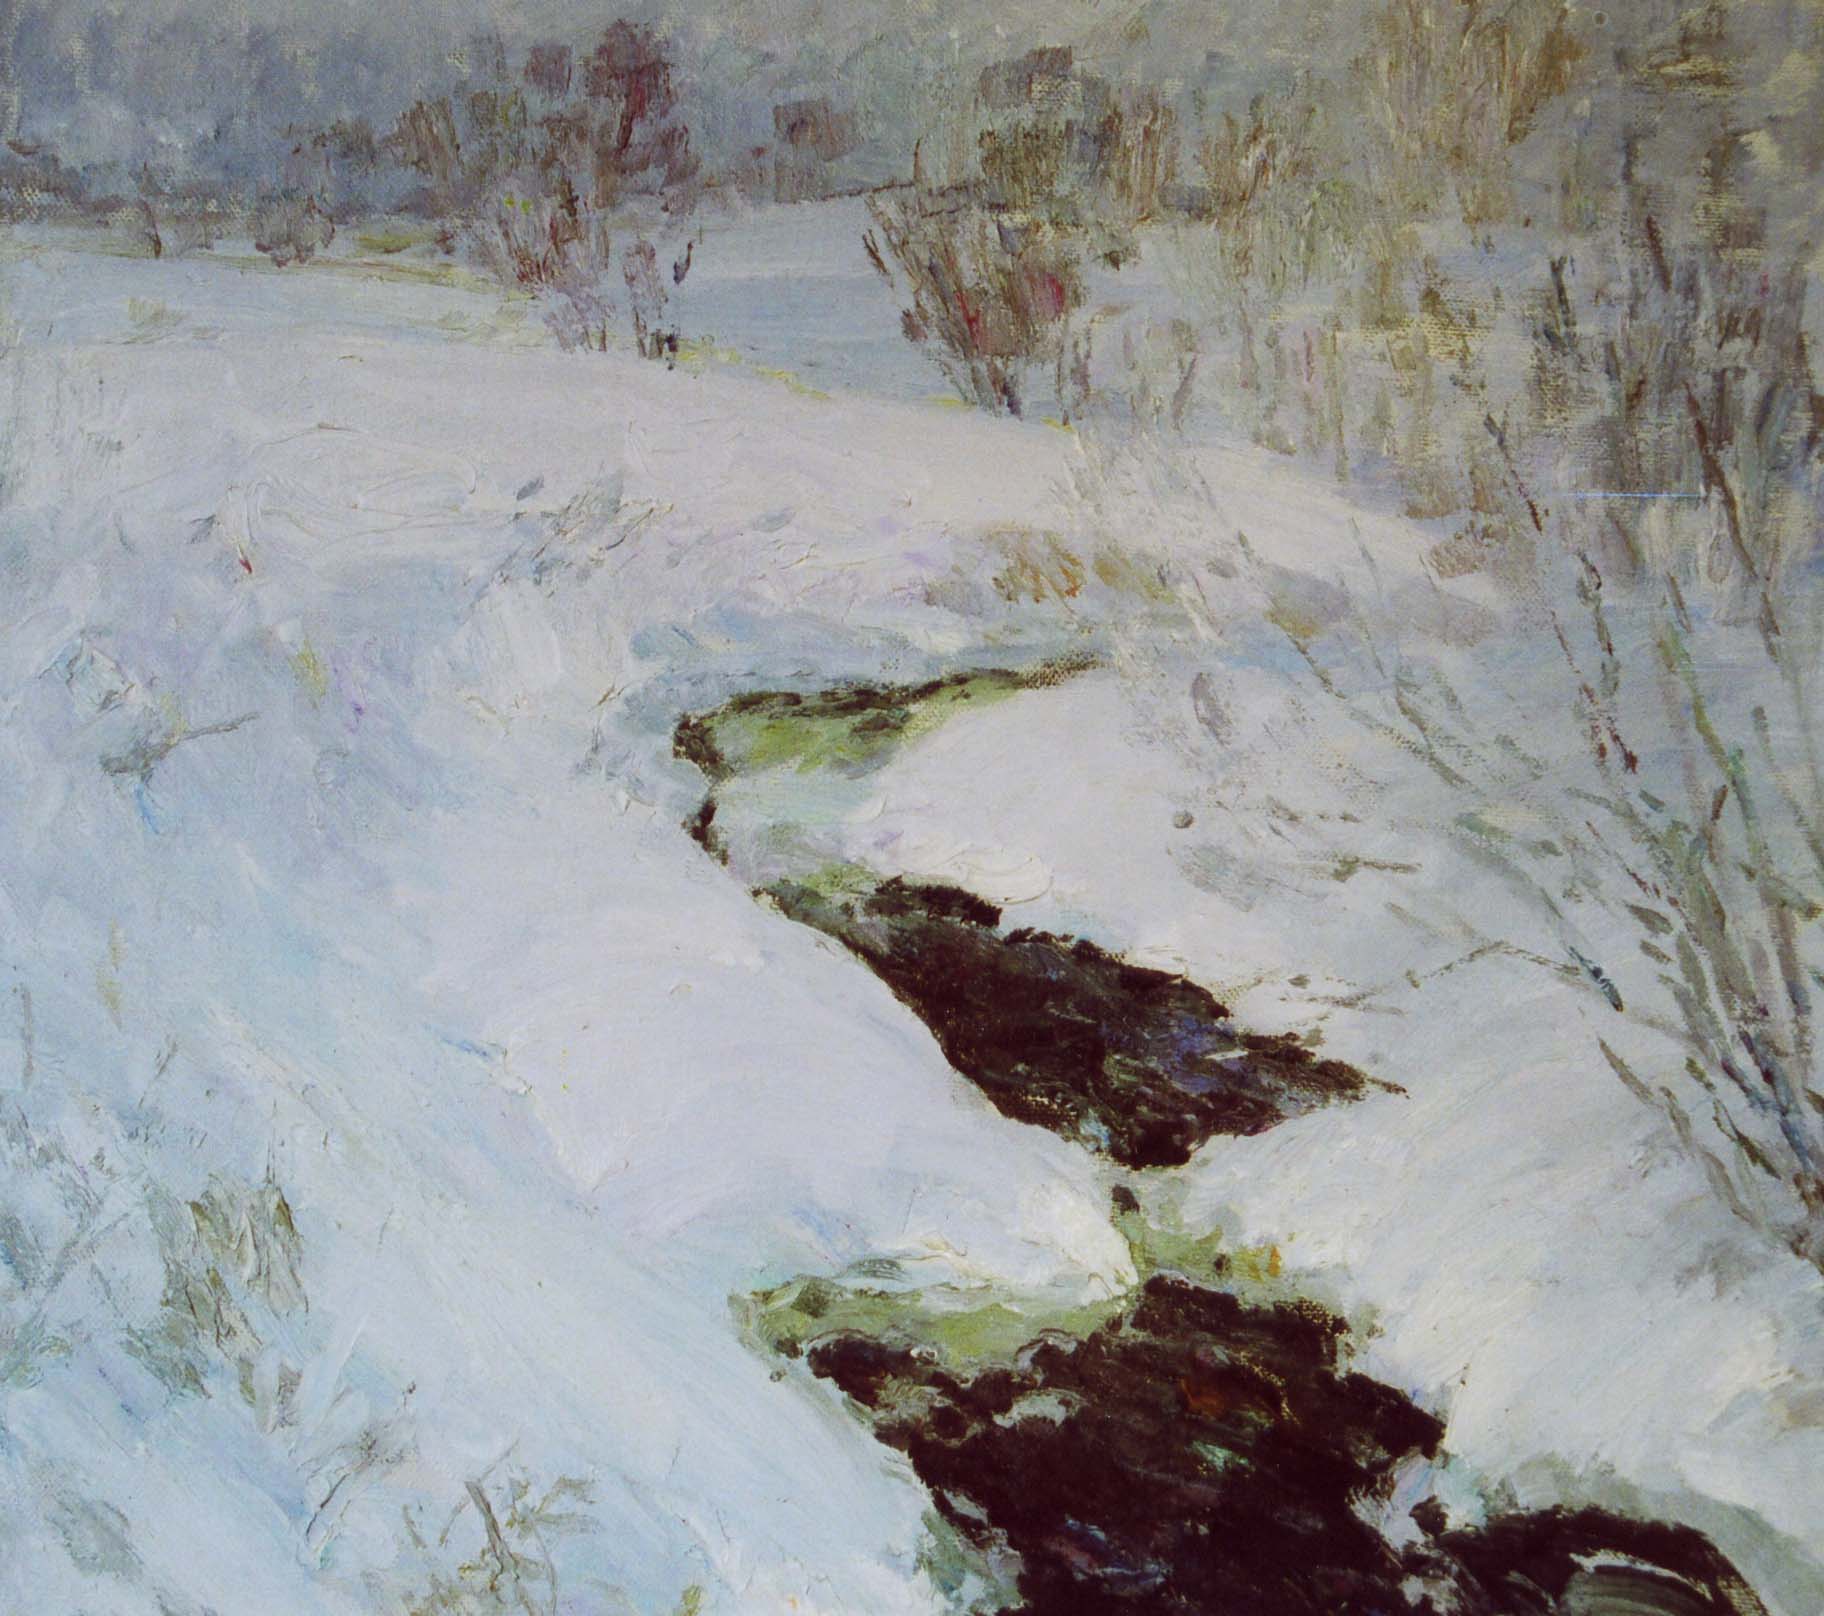 Moroz, pittura russa, post impressionismo russo, inverno, neve, ruscello